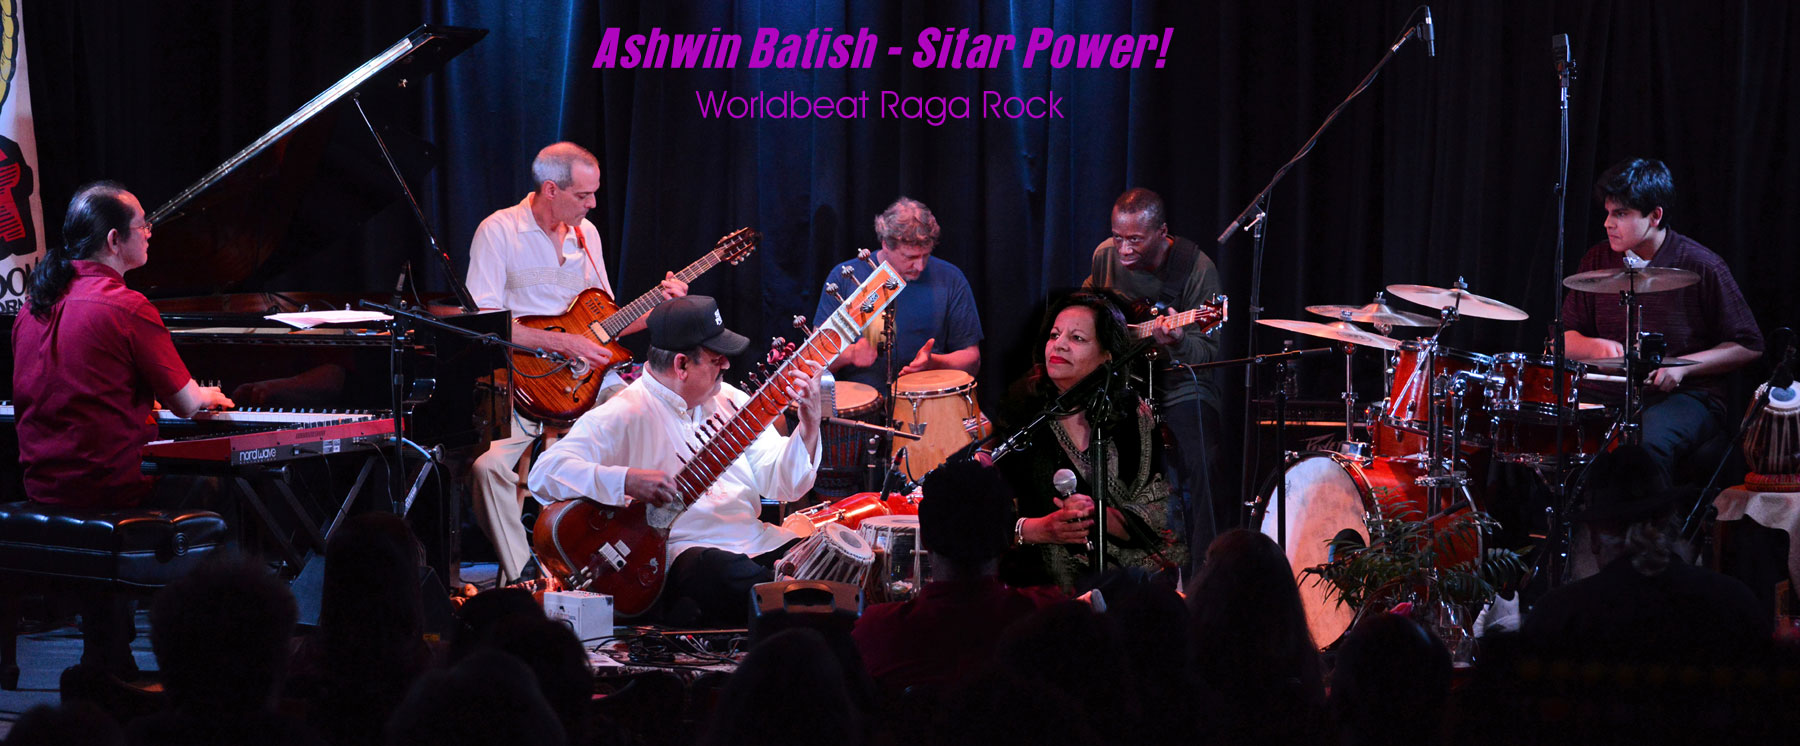 Ashwin Batish with his Sitar Power group - live at the Kuumbwa Jazz Center, Santa Cruz. All rights reserved. 2012 Ashwin Batish. Copyrighted image